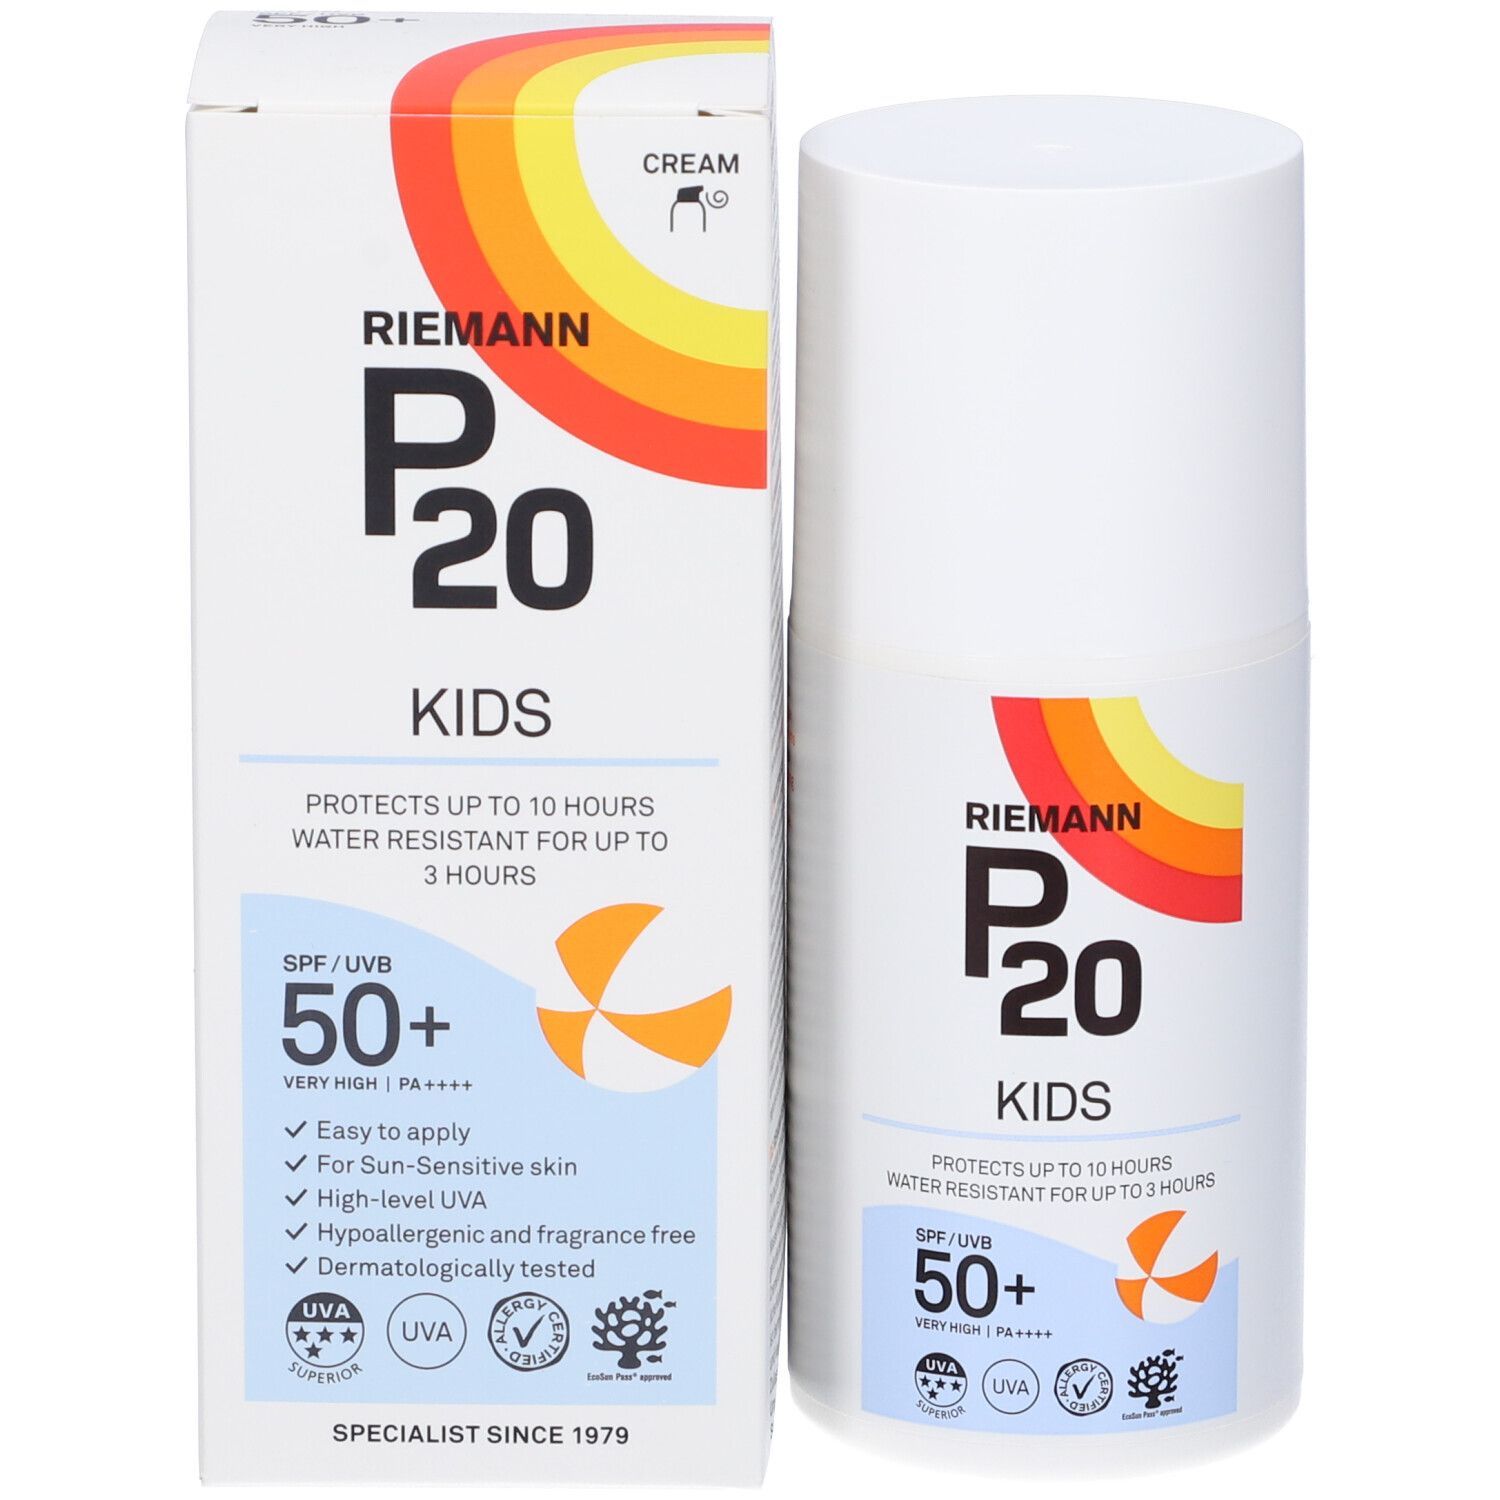 Riemann P20 Protezione Solare Kids Spf 50+